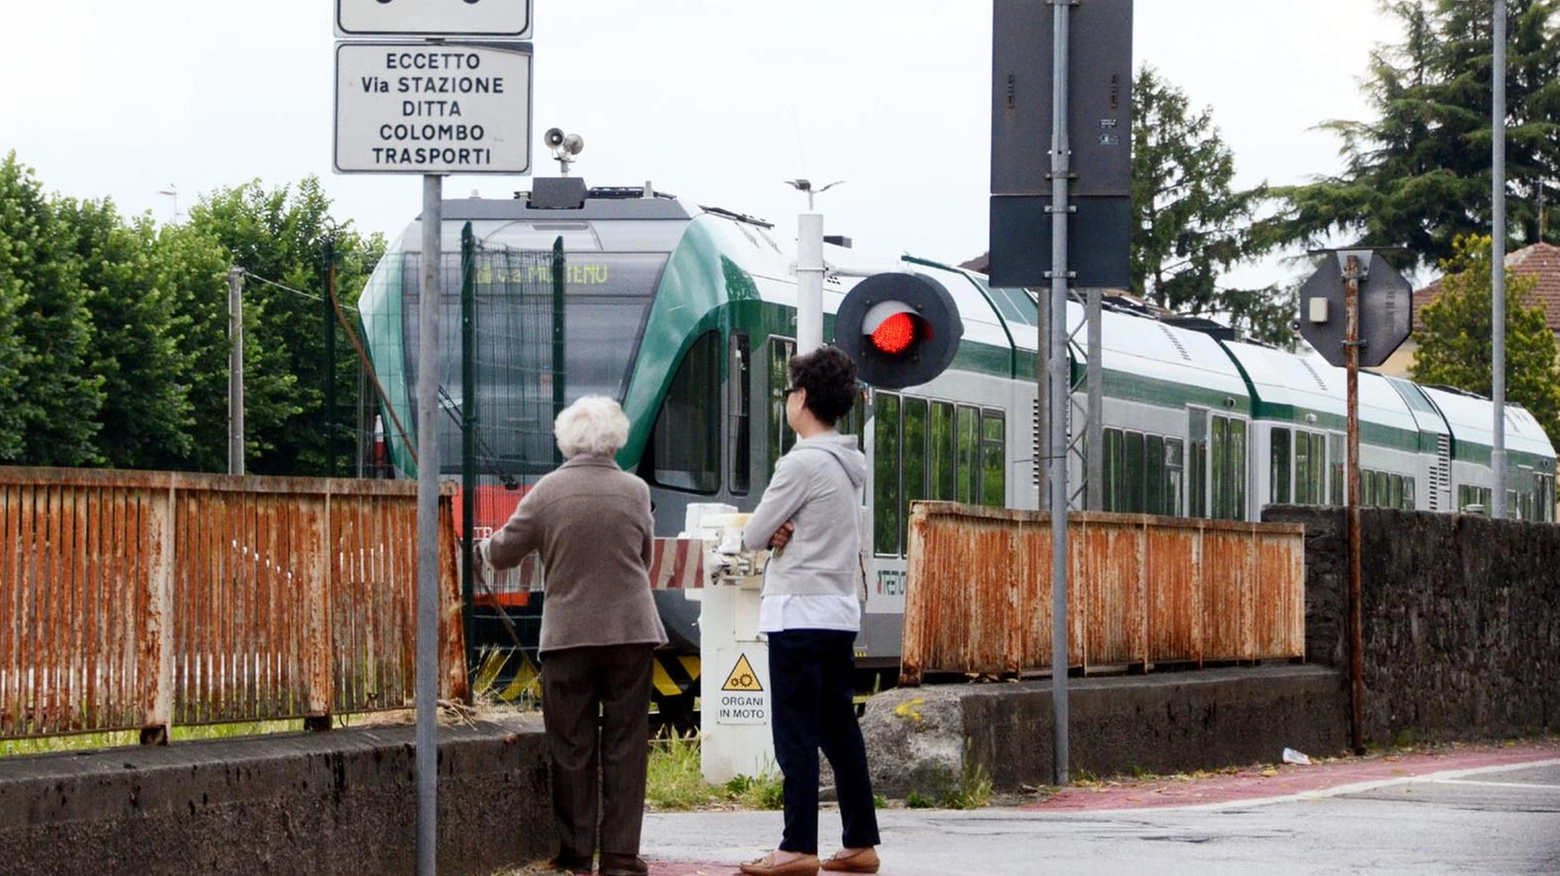 L’estate dei vacanzieri con i treni bloccati dai lavori lungo i binari